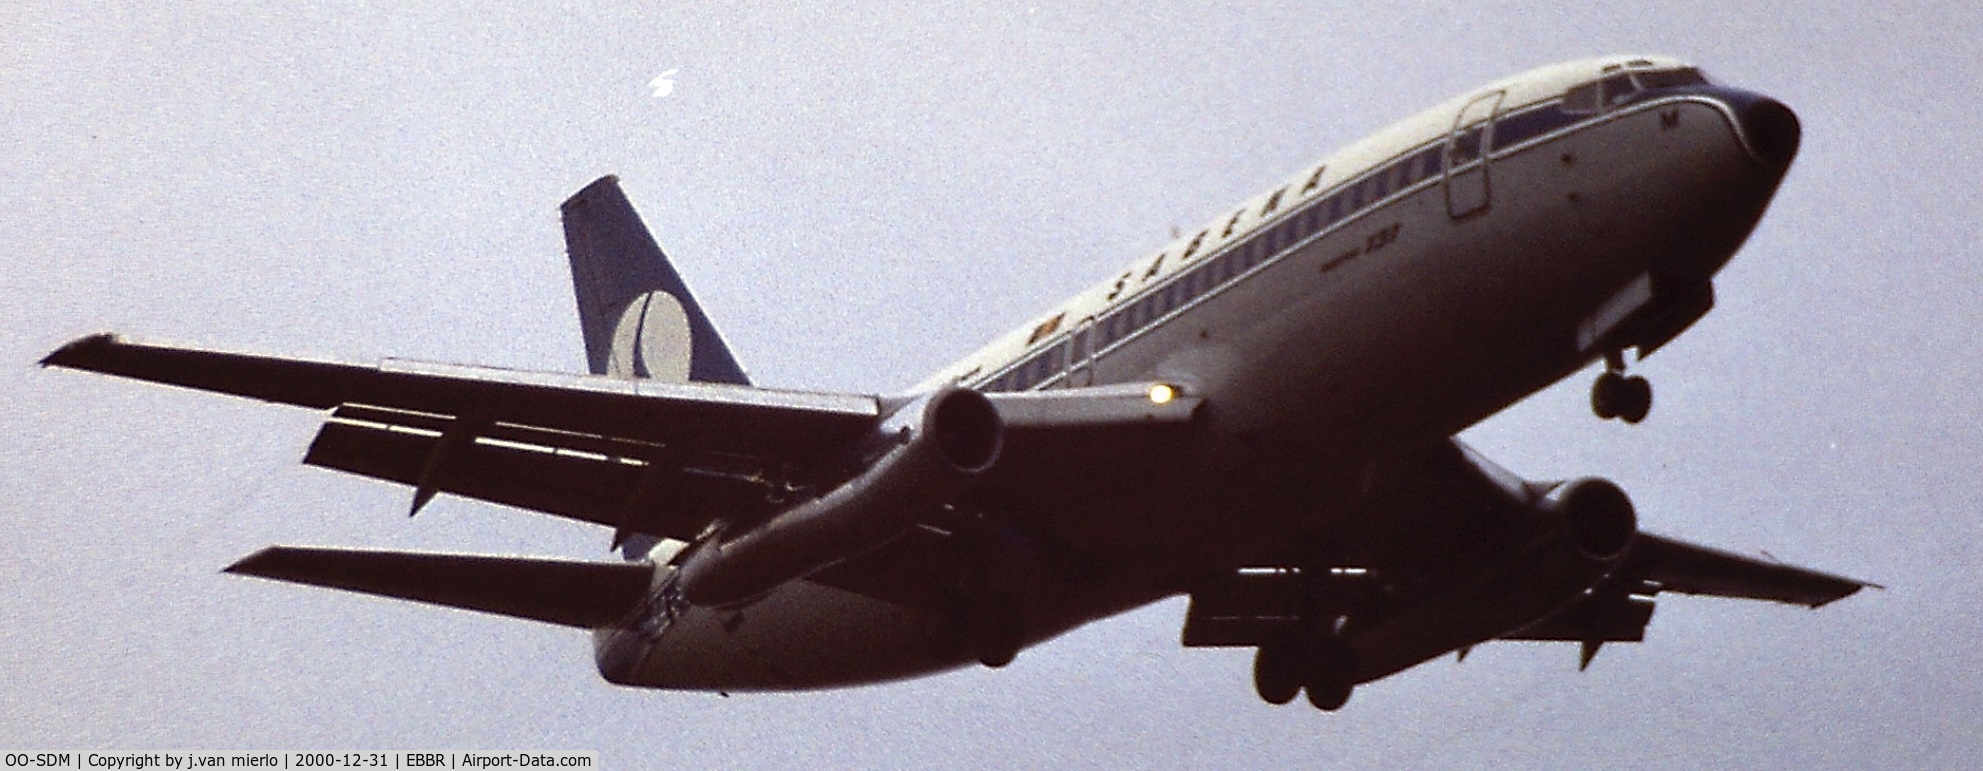 OO-SDM, 1975 Boeing 737-229 C/N 21137, Approaching 25L at Brussels